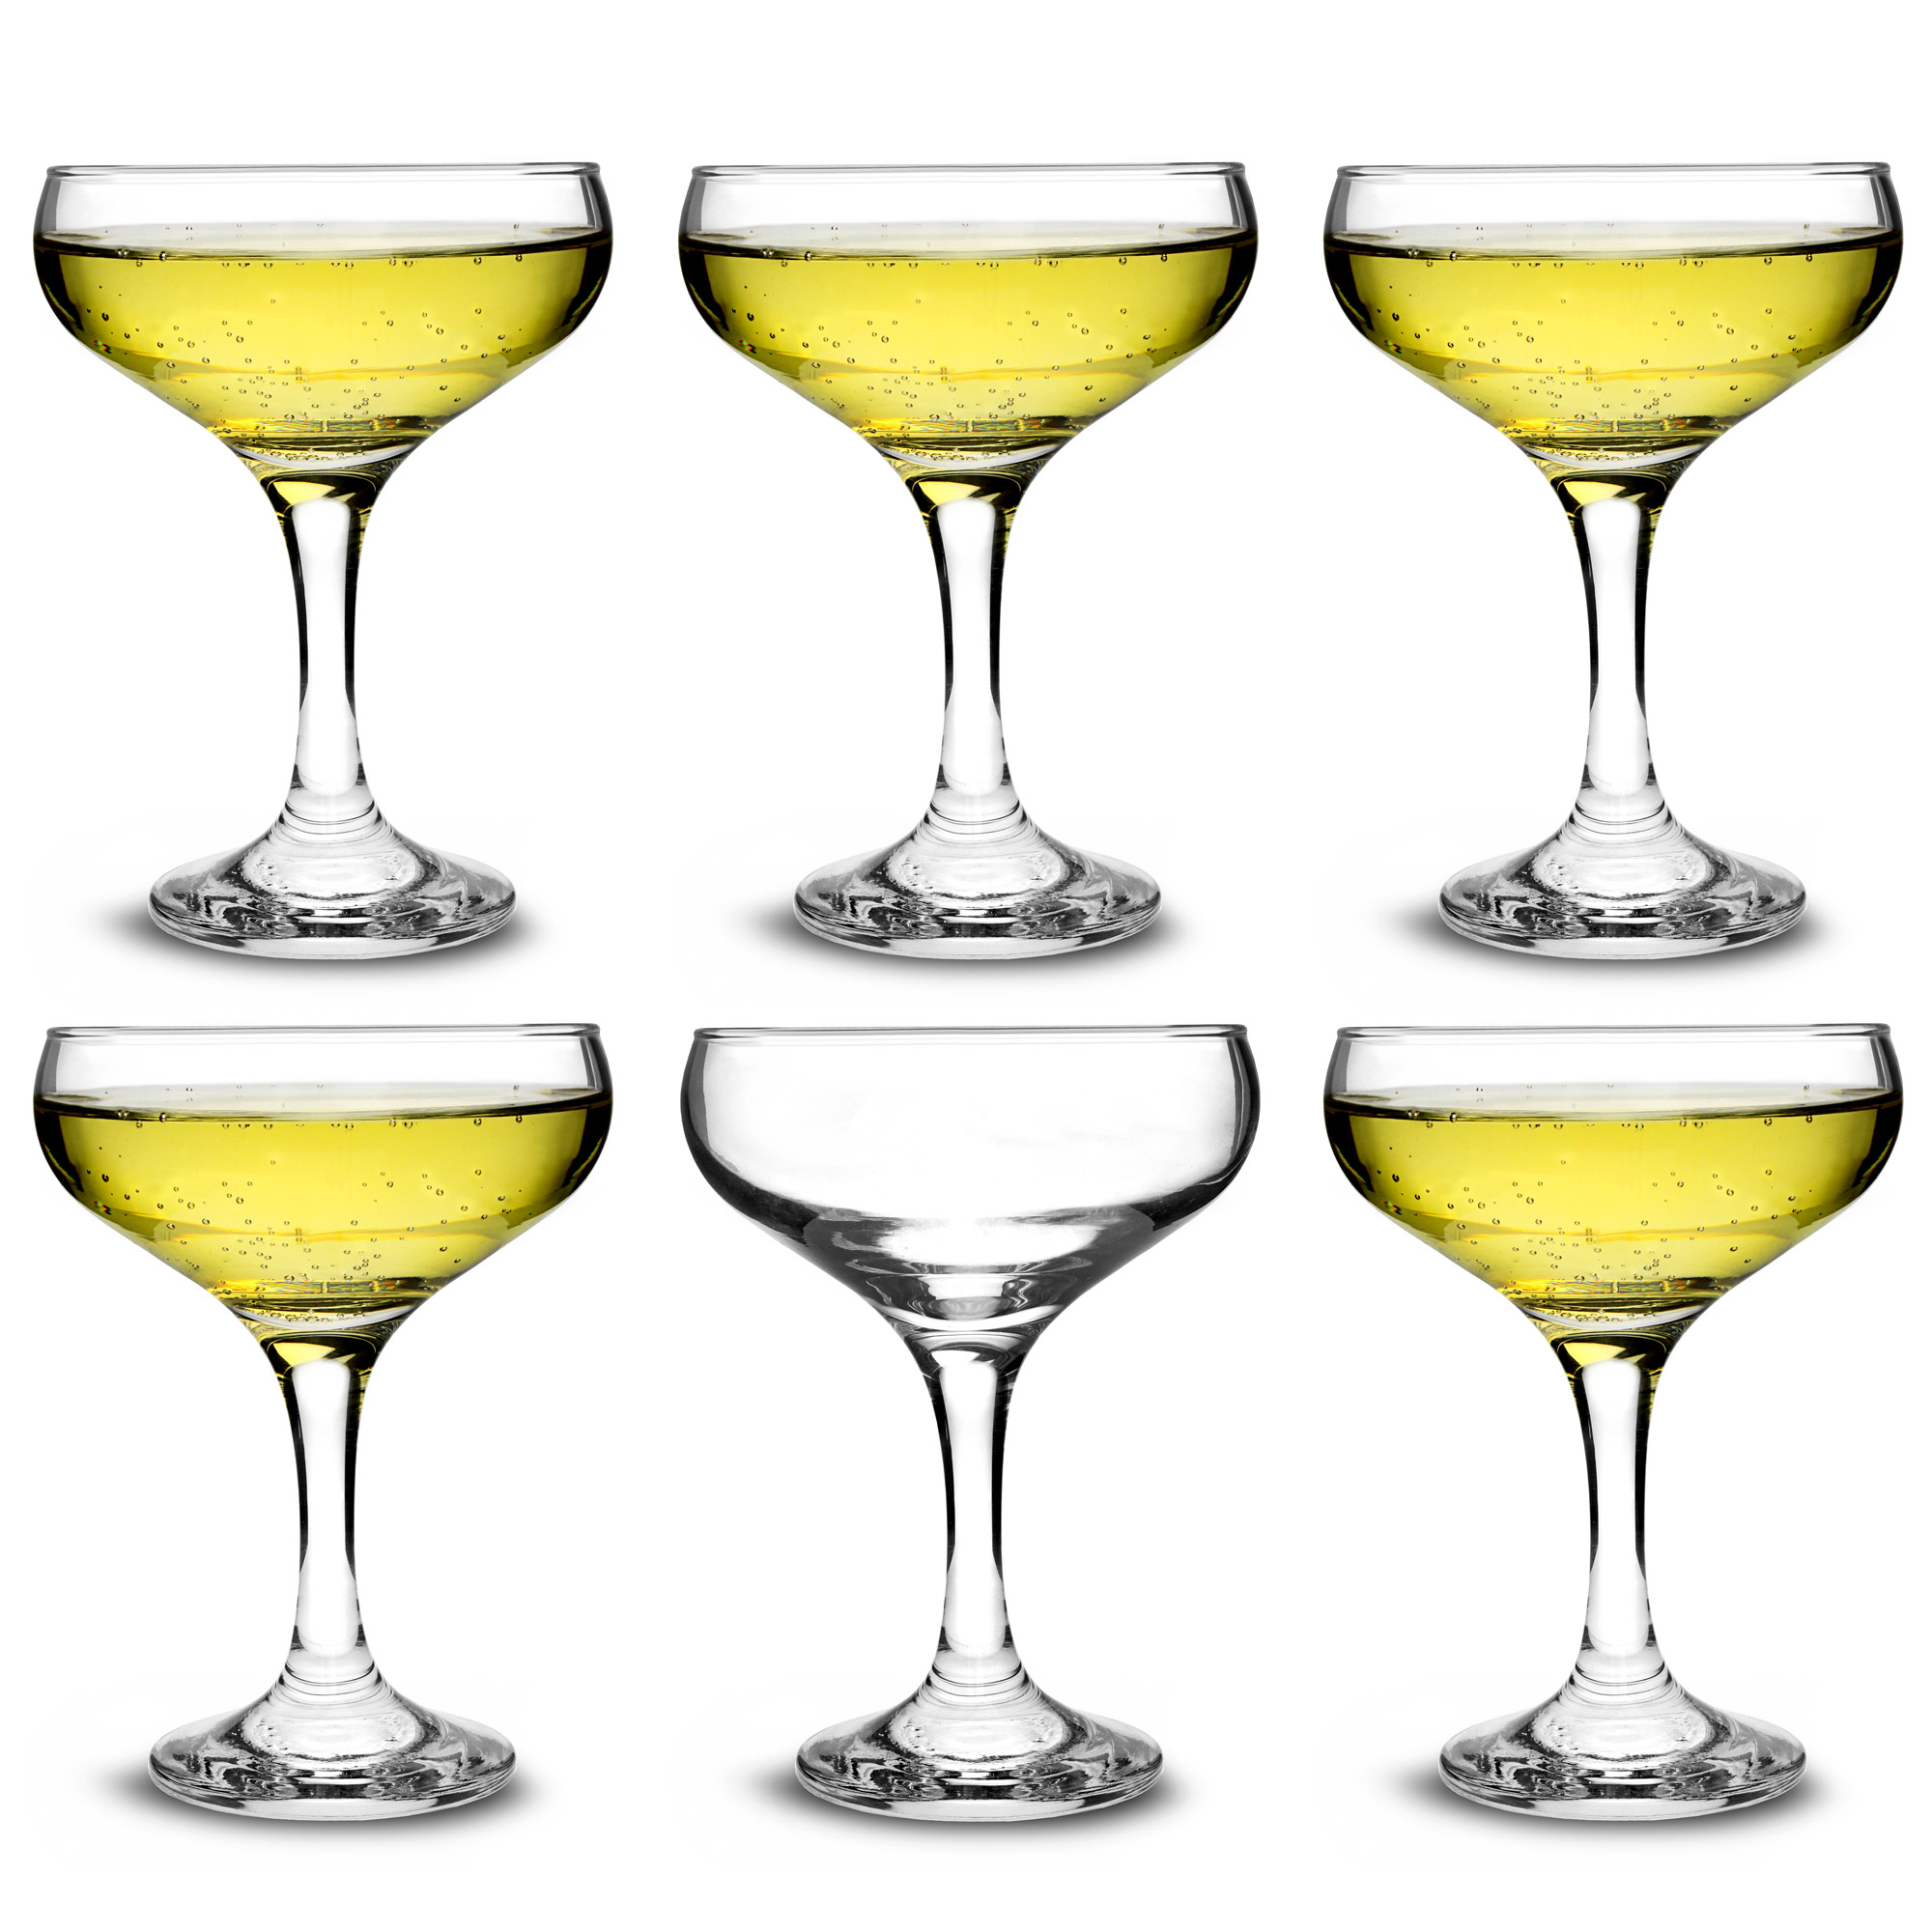 Conjunto de 2 Cóctel de Vidrios en Caja de Regalo de la Novedad/Champagne bar@drinkstuff Doble Pared de Vidrio Flotante Coupe 7 oz 200ml 